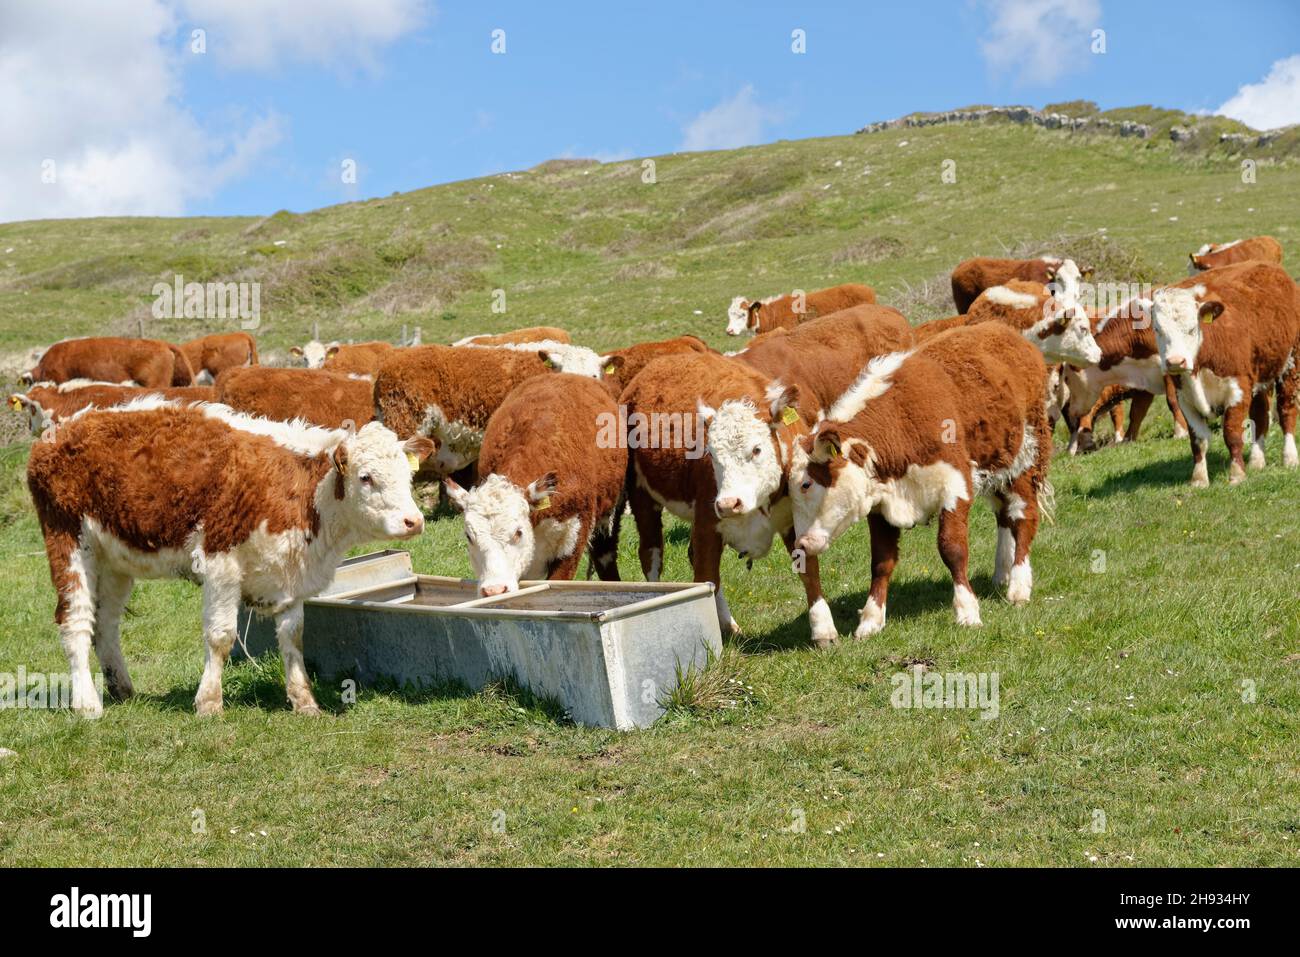 Troupeau de troupeaux de bovins d'Hereford (Bos taurus) rassemblés autour d'une cuvette d'eau sur une pente herbeuse, Durlston Country Park, Dorset, Royaume-Uni, mai. Banque D'Images